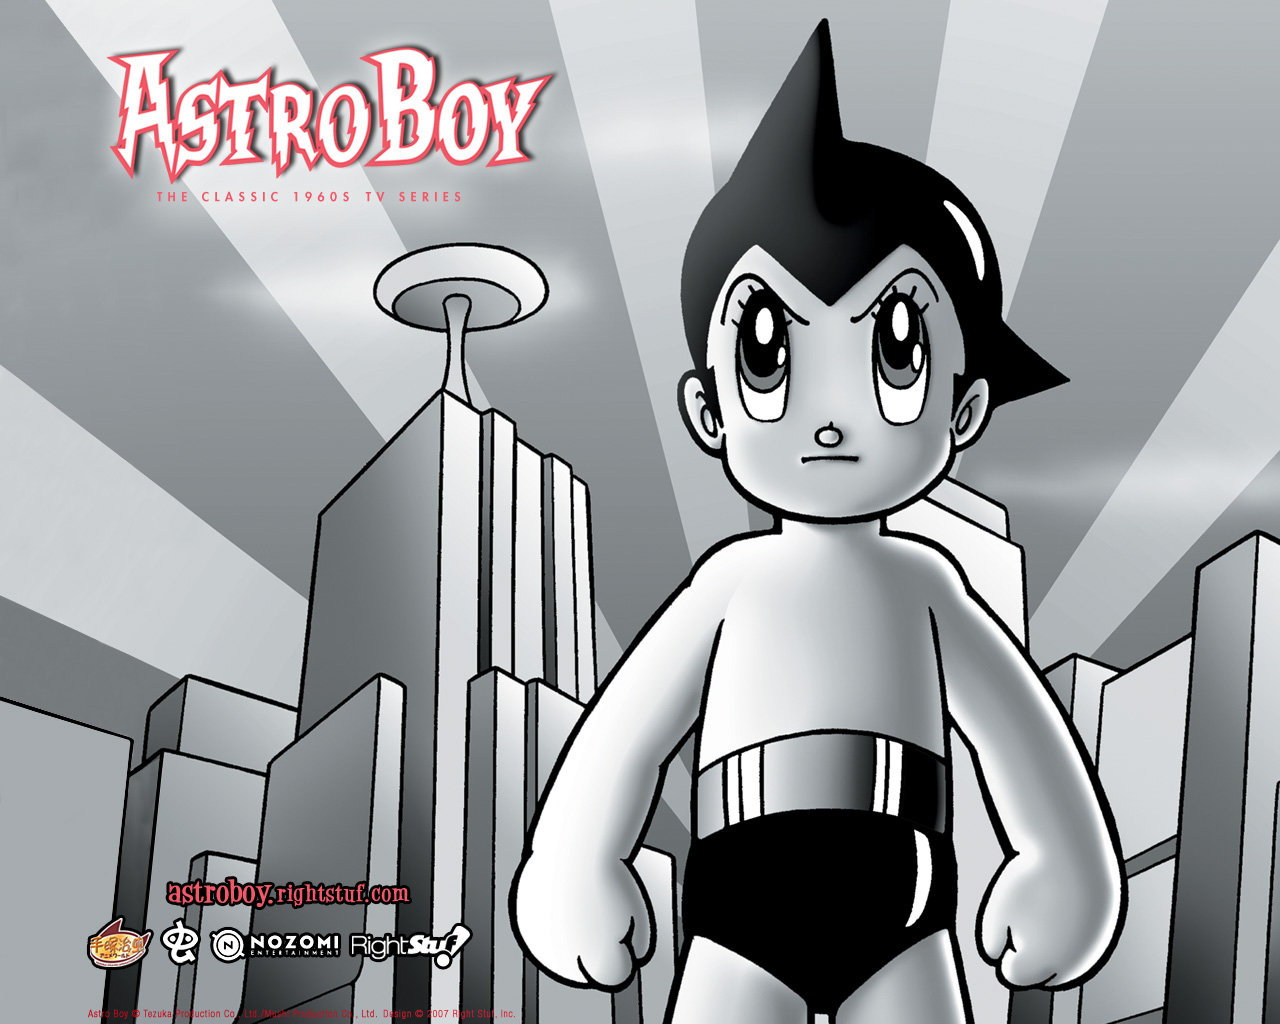 Descargar fondos de escritorio de Astro Boy HD